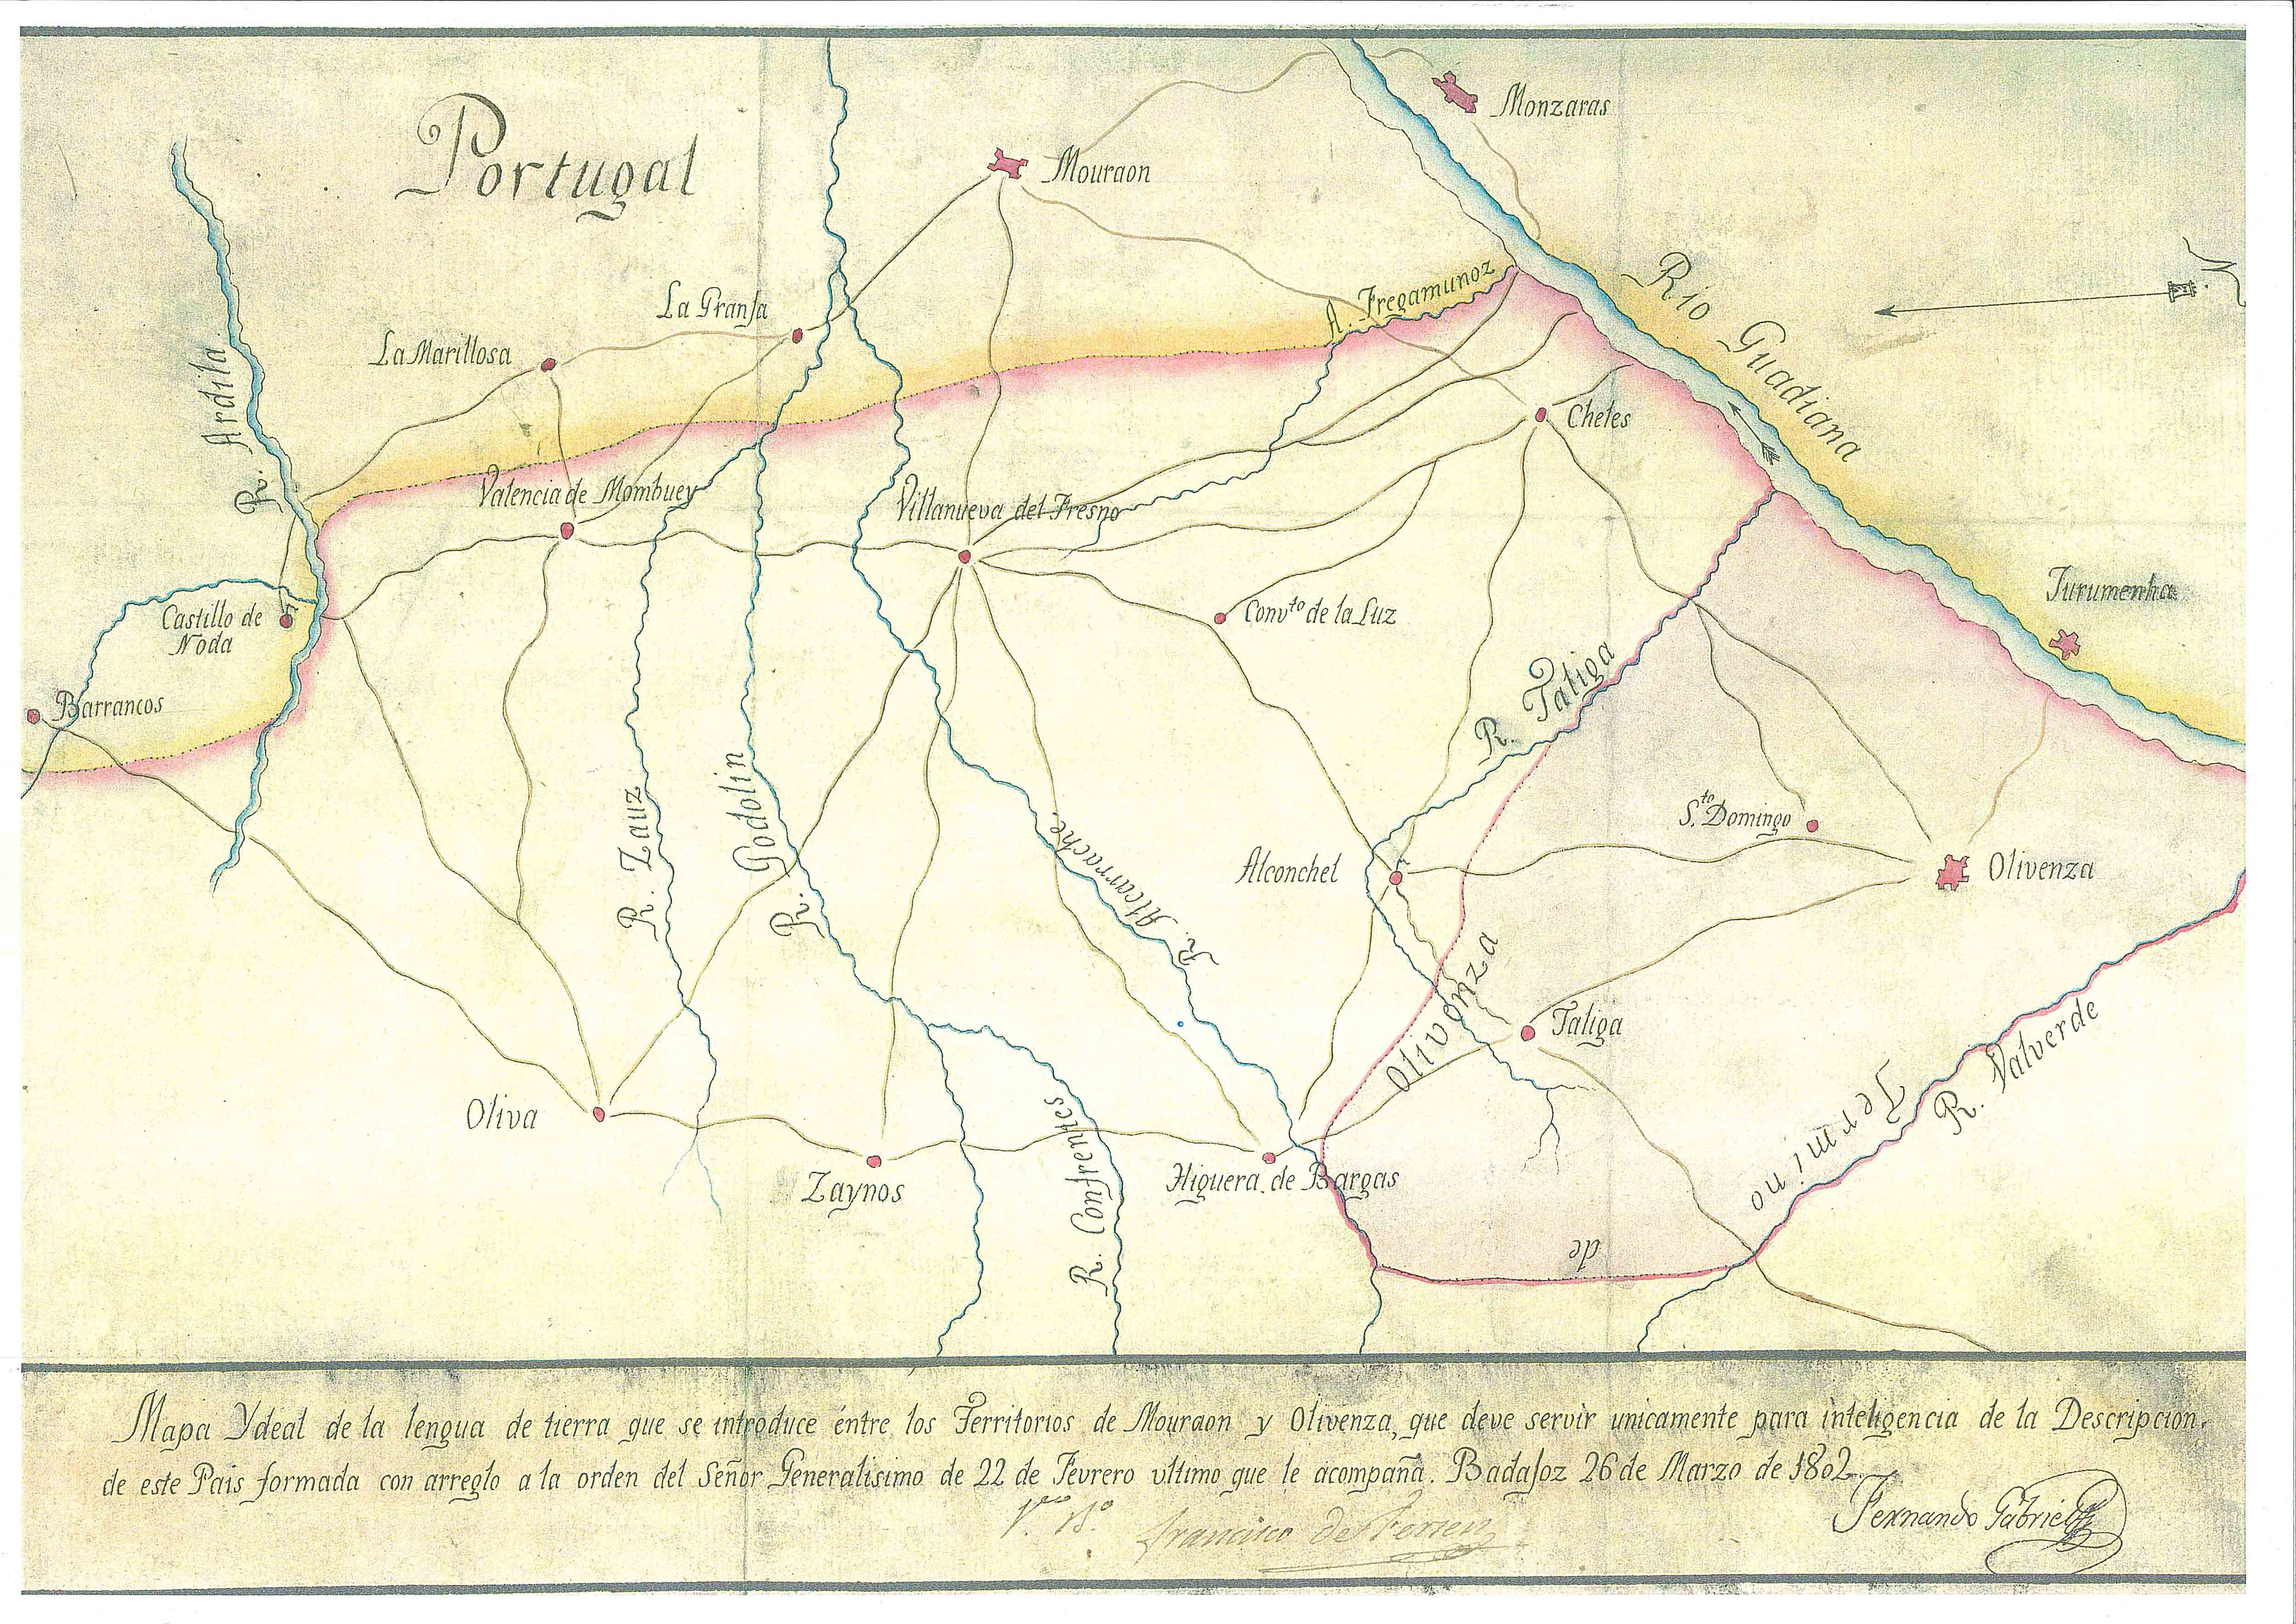 Mapa Ydeal de la lengua de tierra que se introduce entre los territorios de Mouraon y Olivenza...